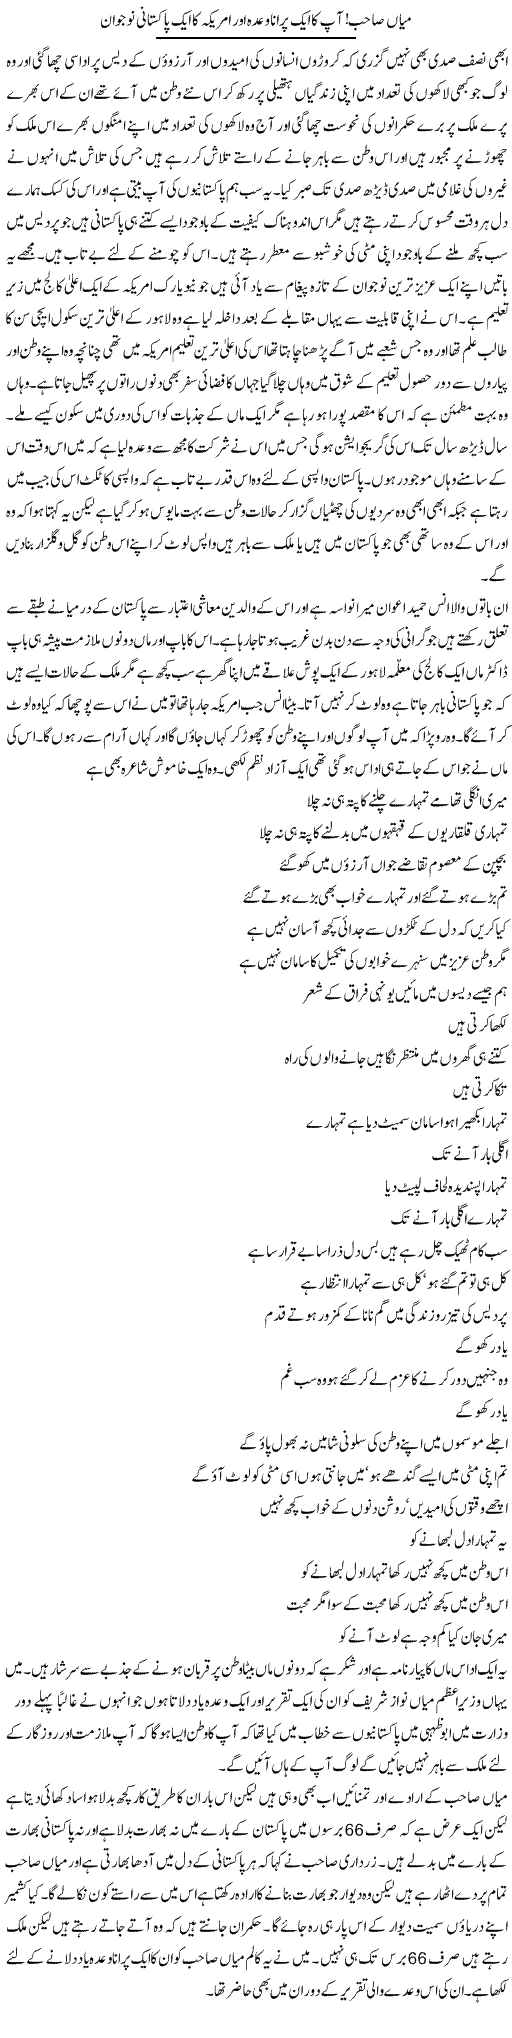 Mian Sahab Apka Aik Purana Wada Our Amrika Ka Aik Pakistani Nojawan | Abdul Qadir Hassan | Daily Urdu Columns